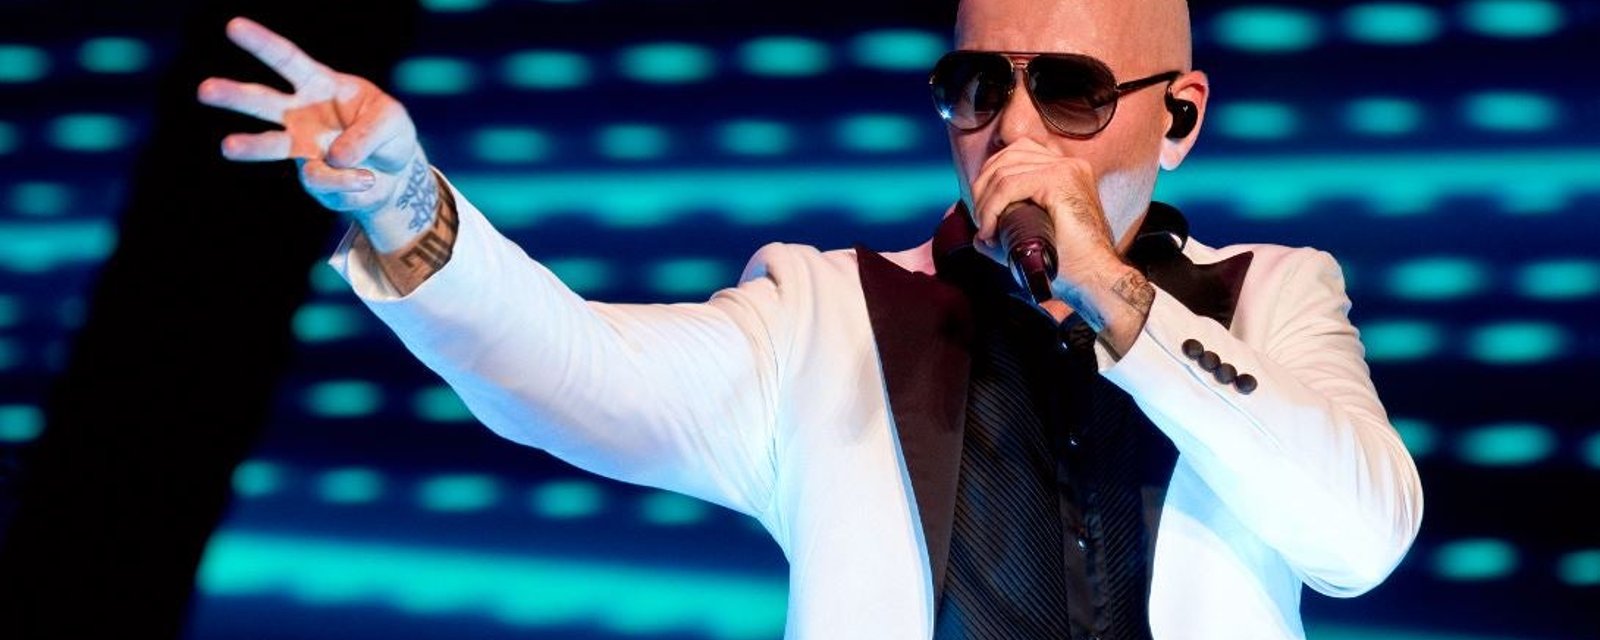 Plusieurs spectateurs indignés font connaître le fond de leur pensée suite à l'annulation du show de Pitbull